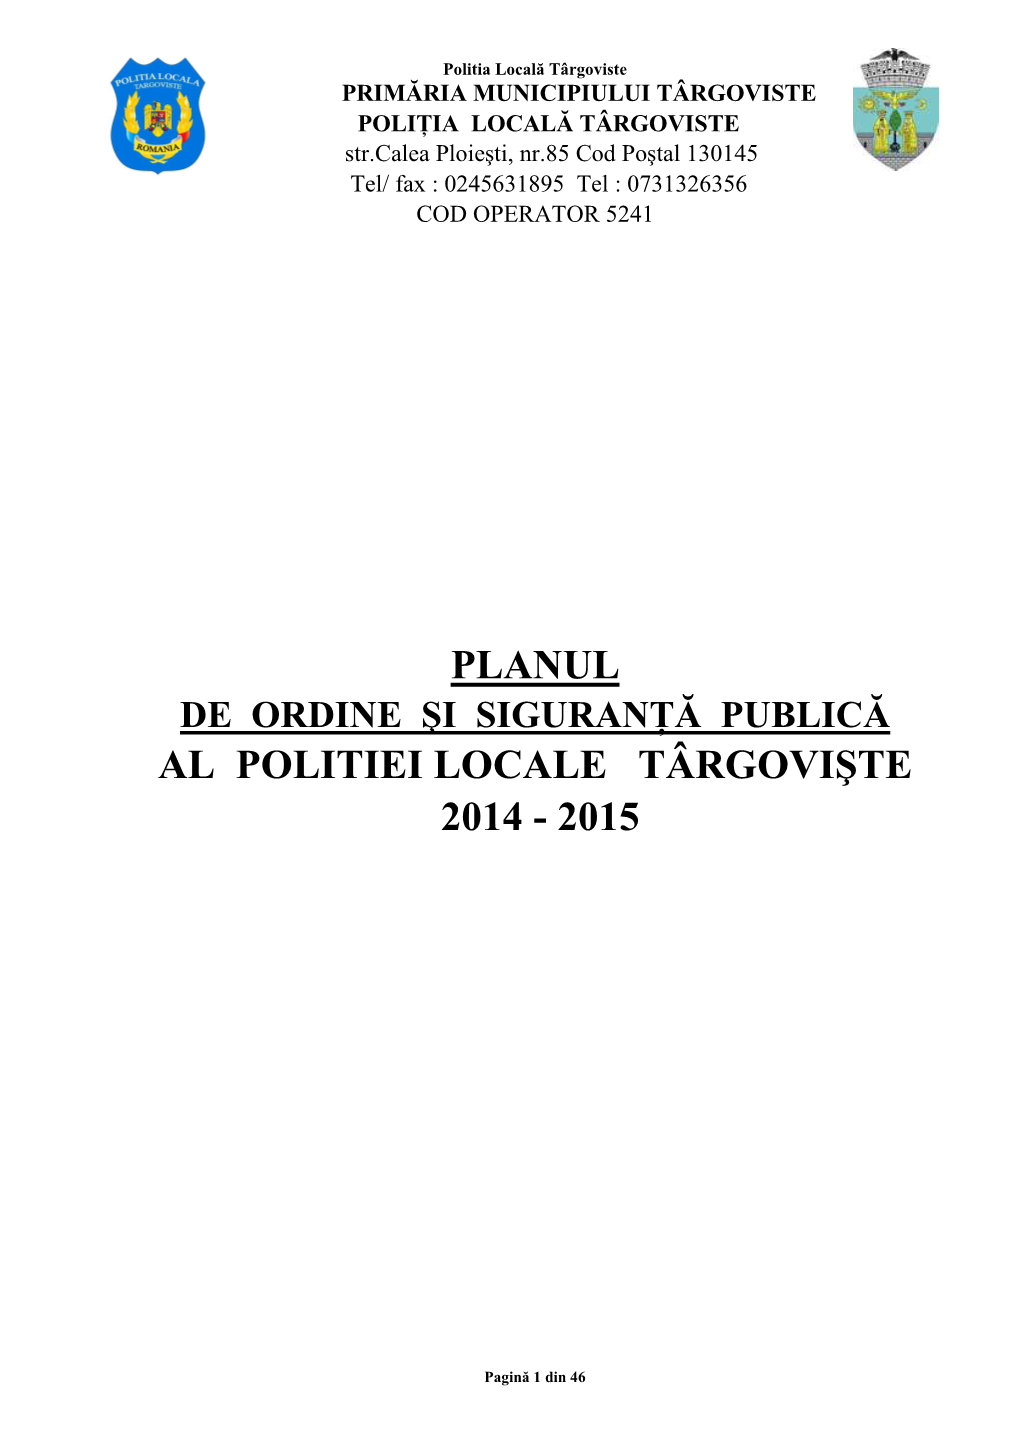 Plan Ordine Publica 2014-2015 HCL